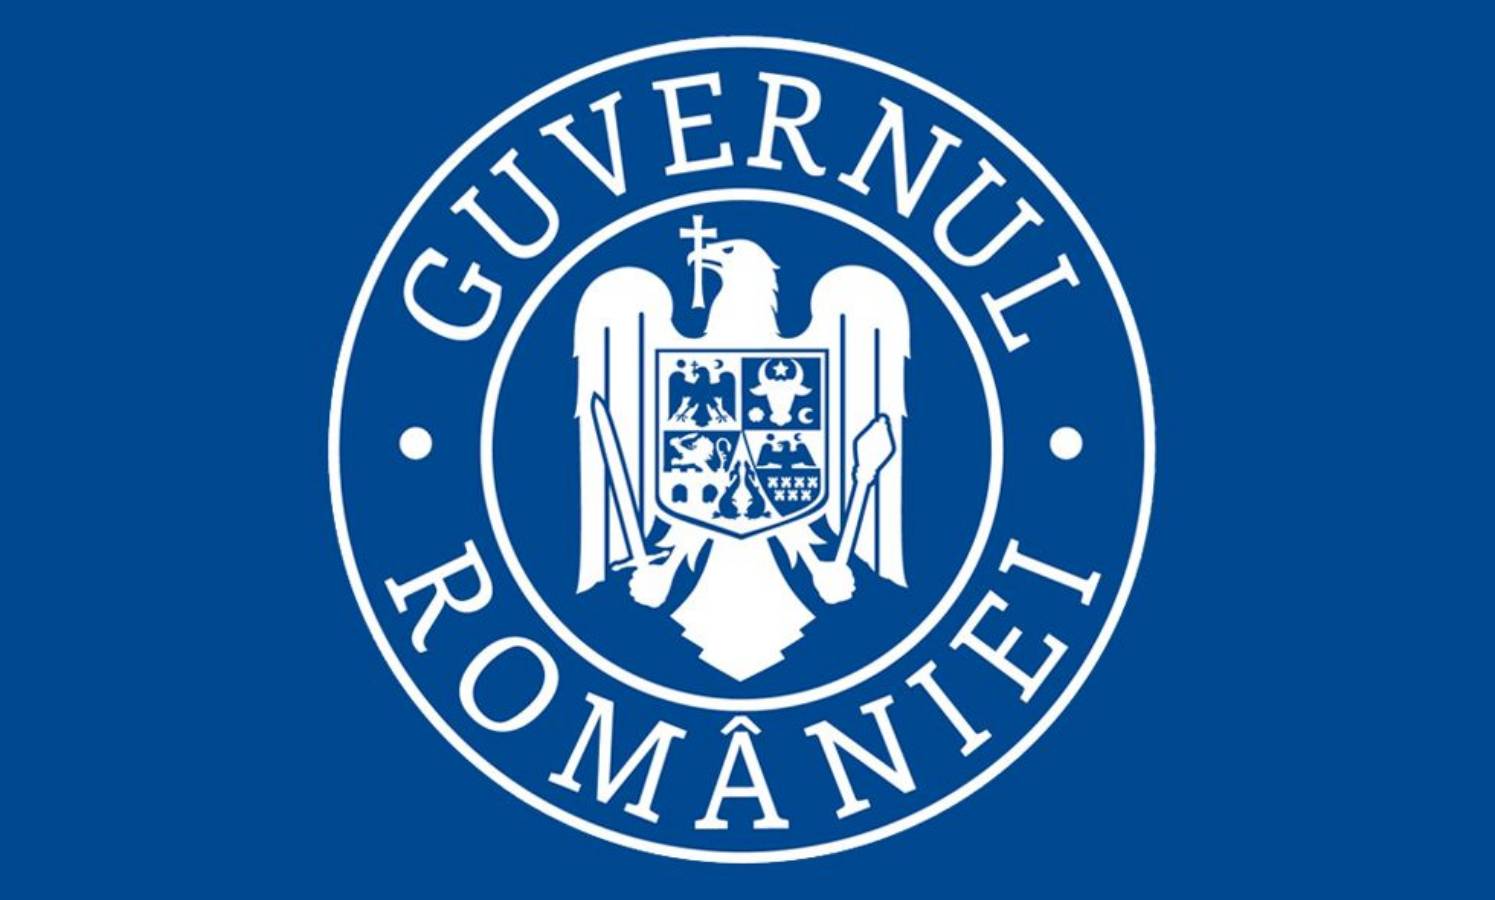 Guvernul Romaniei surprize relaxare 15 iunie